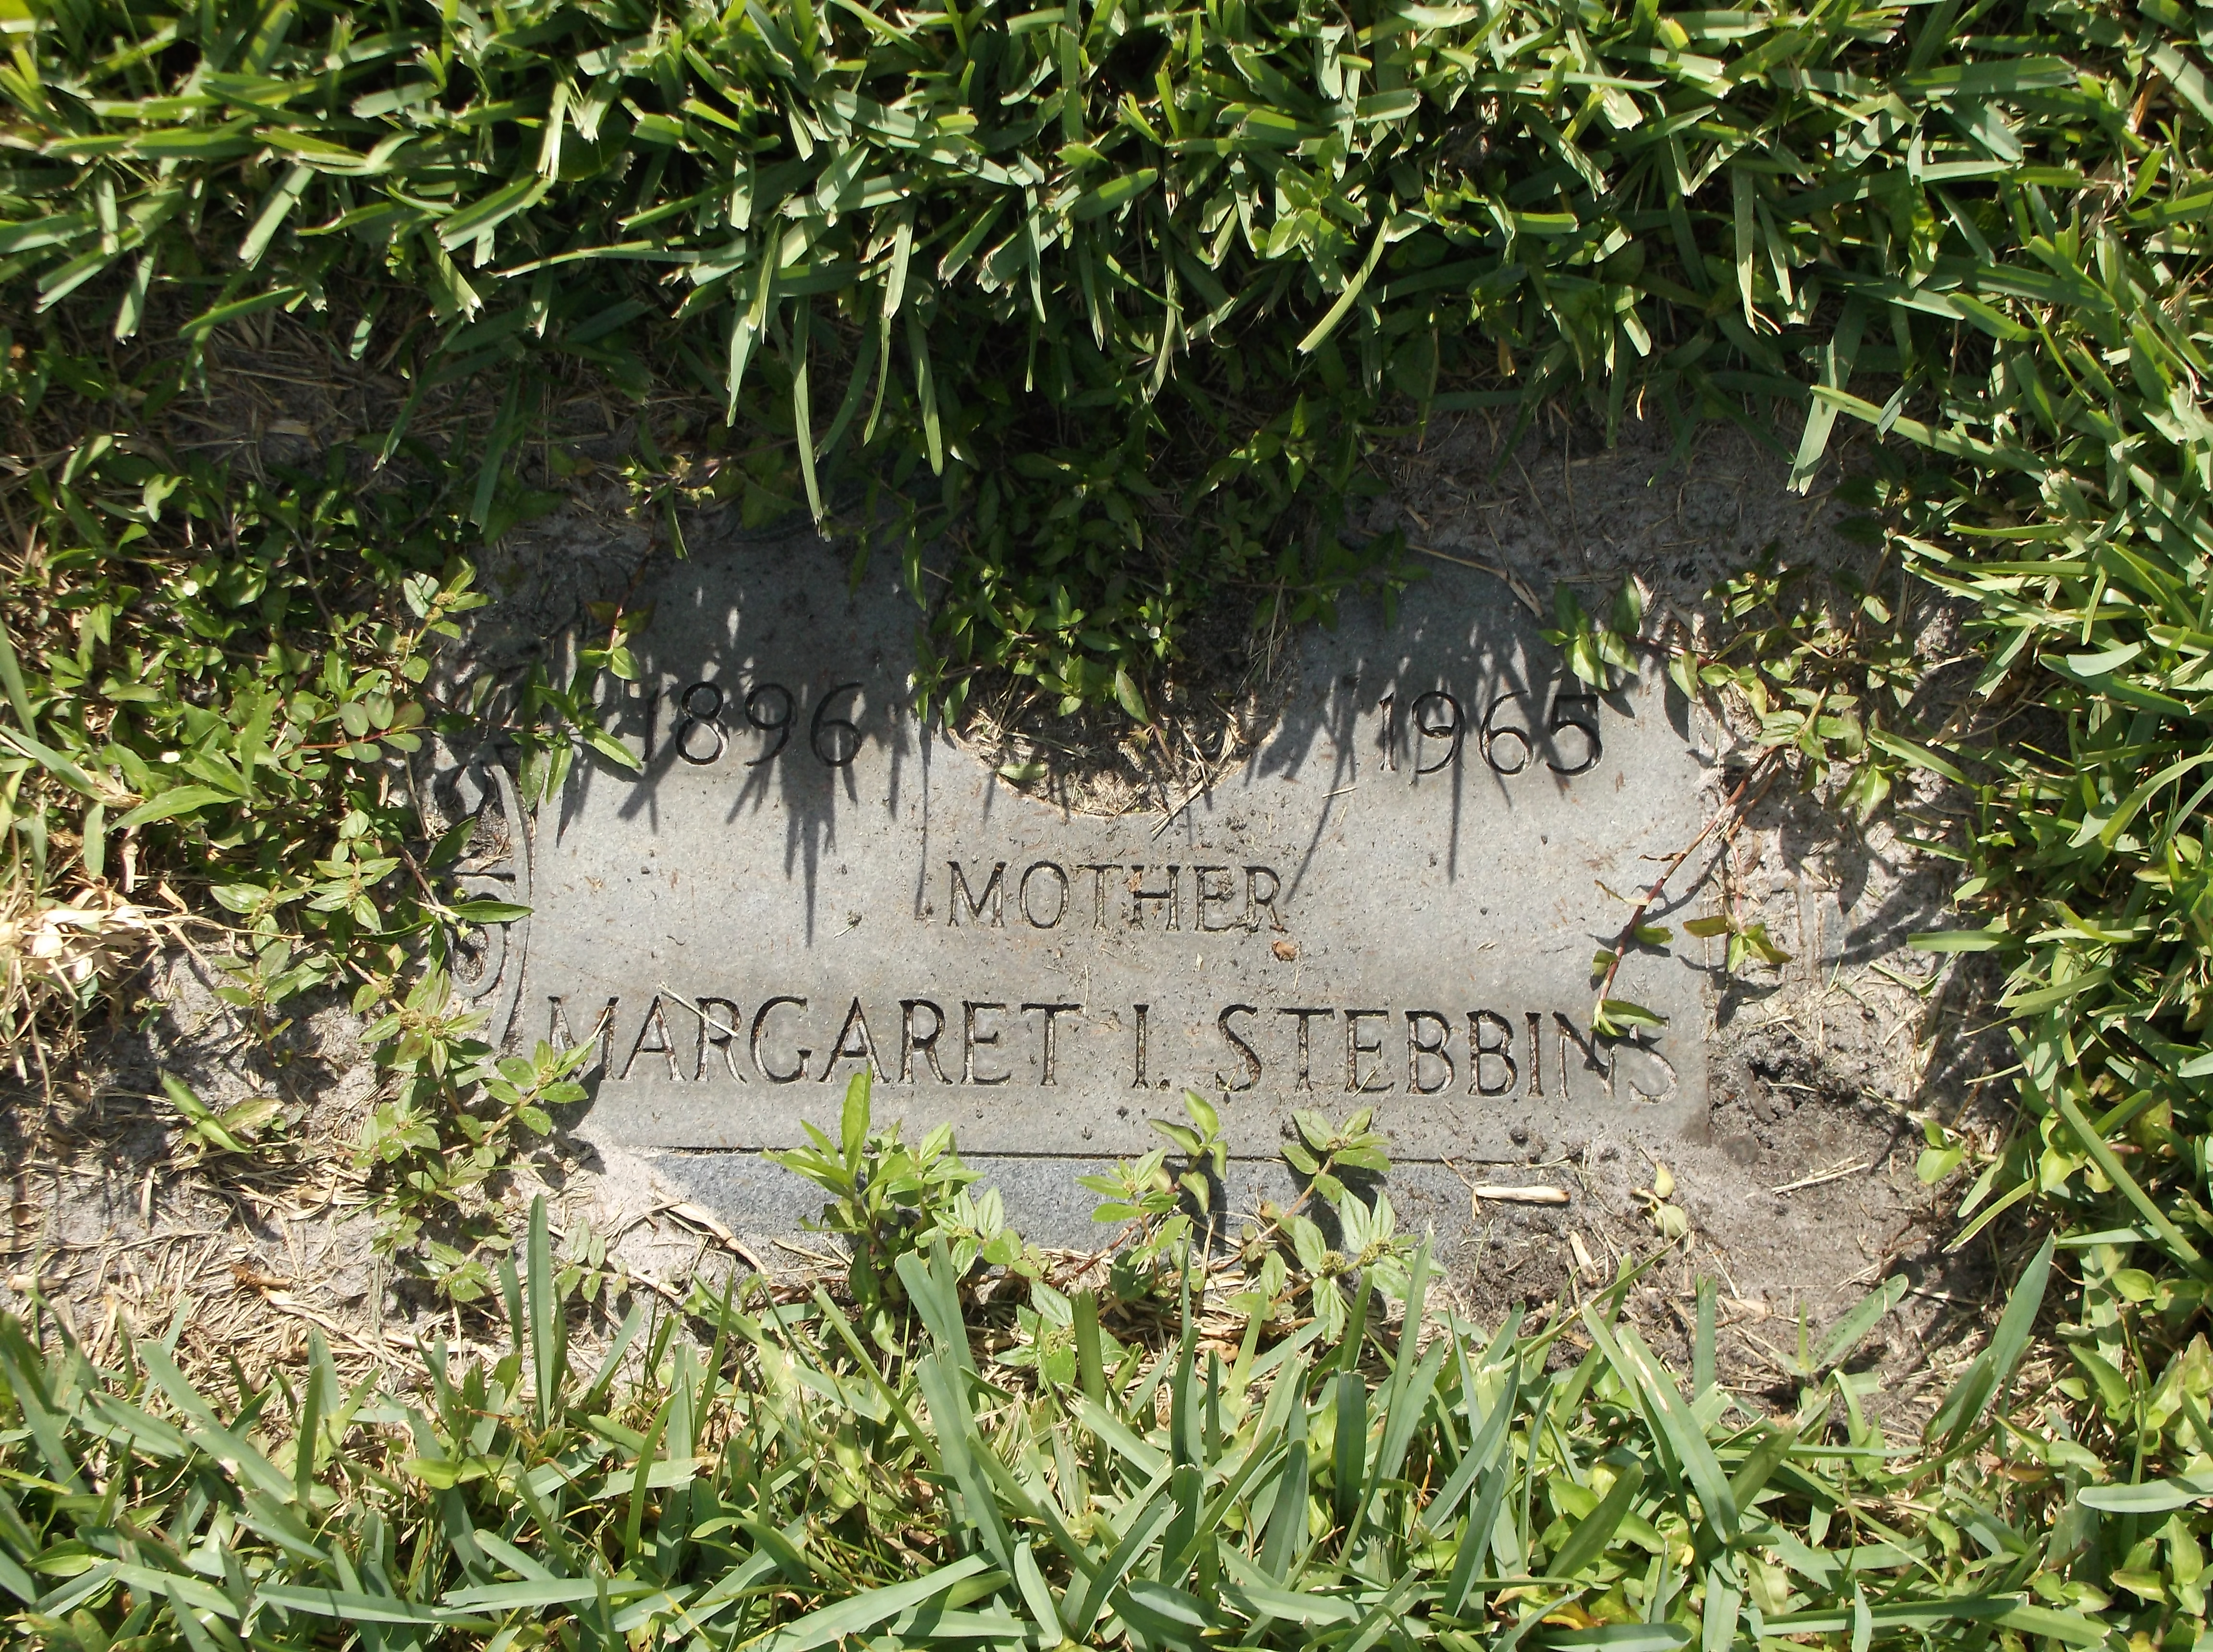 Margaret I Stebbins